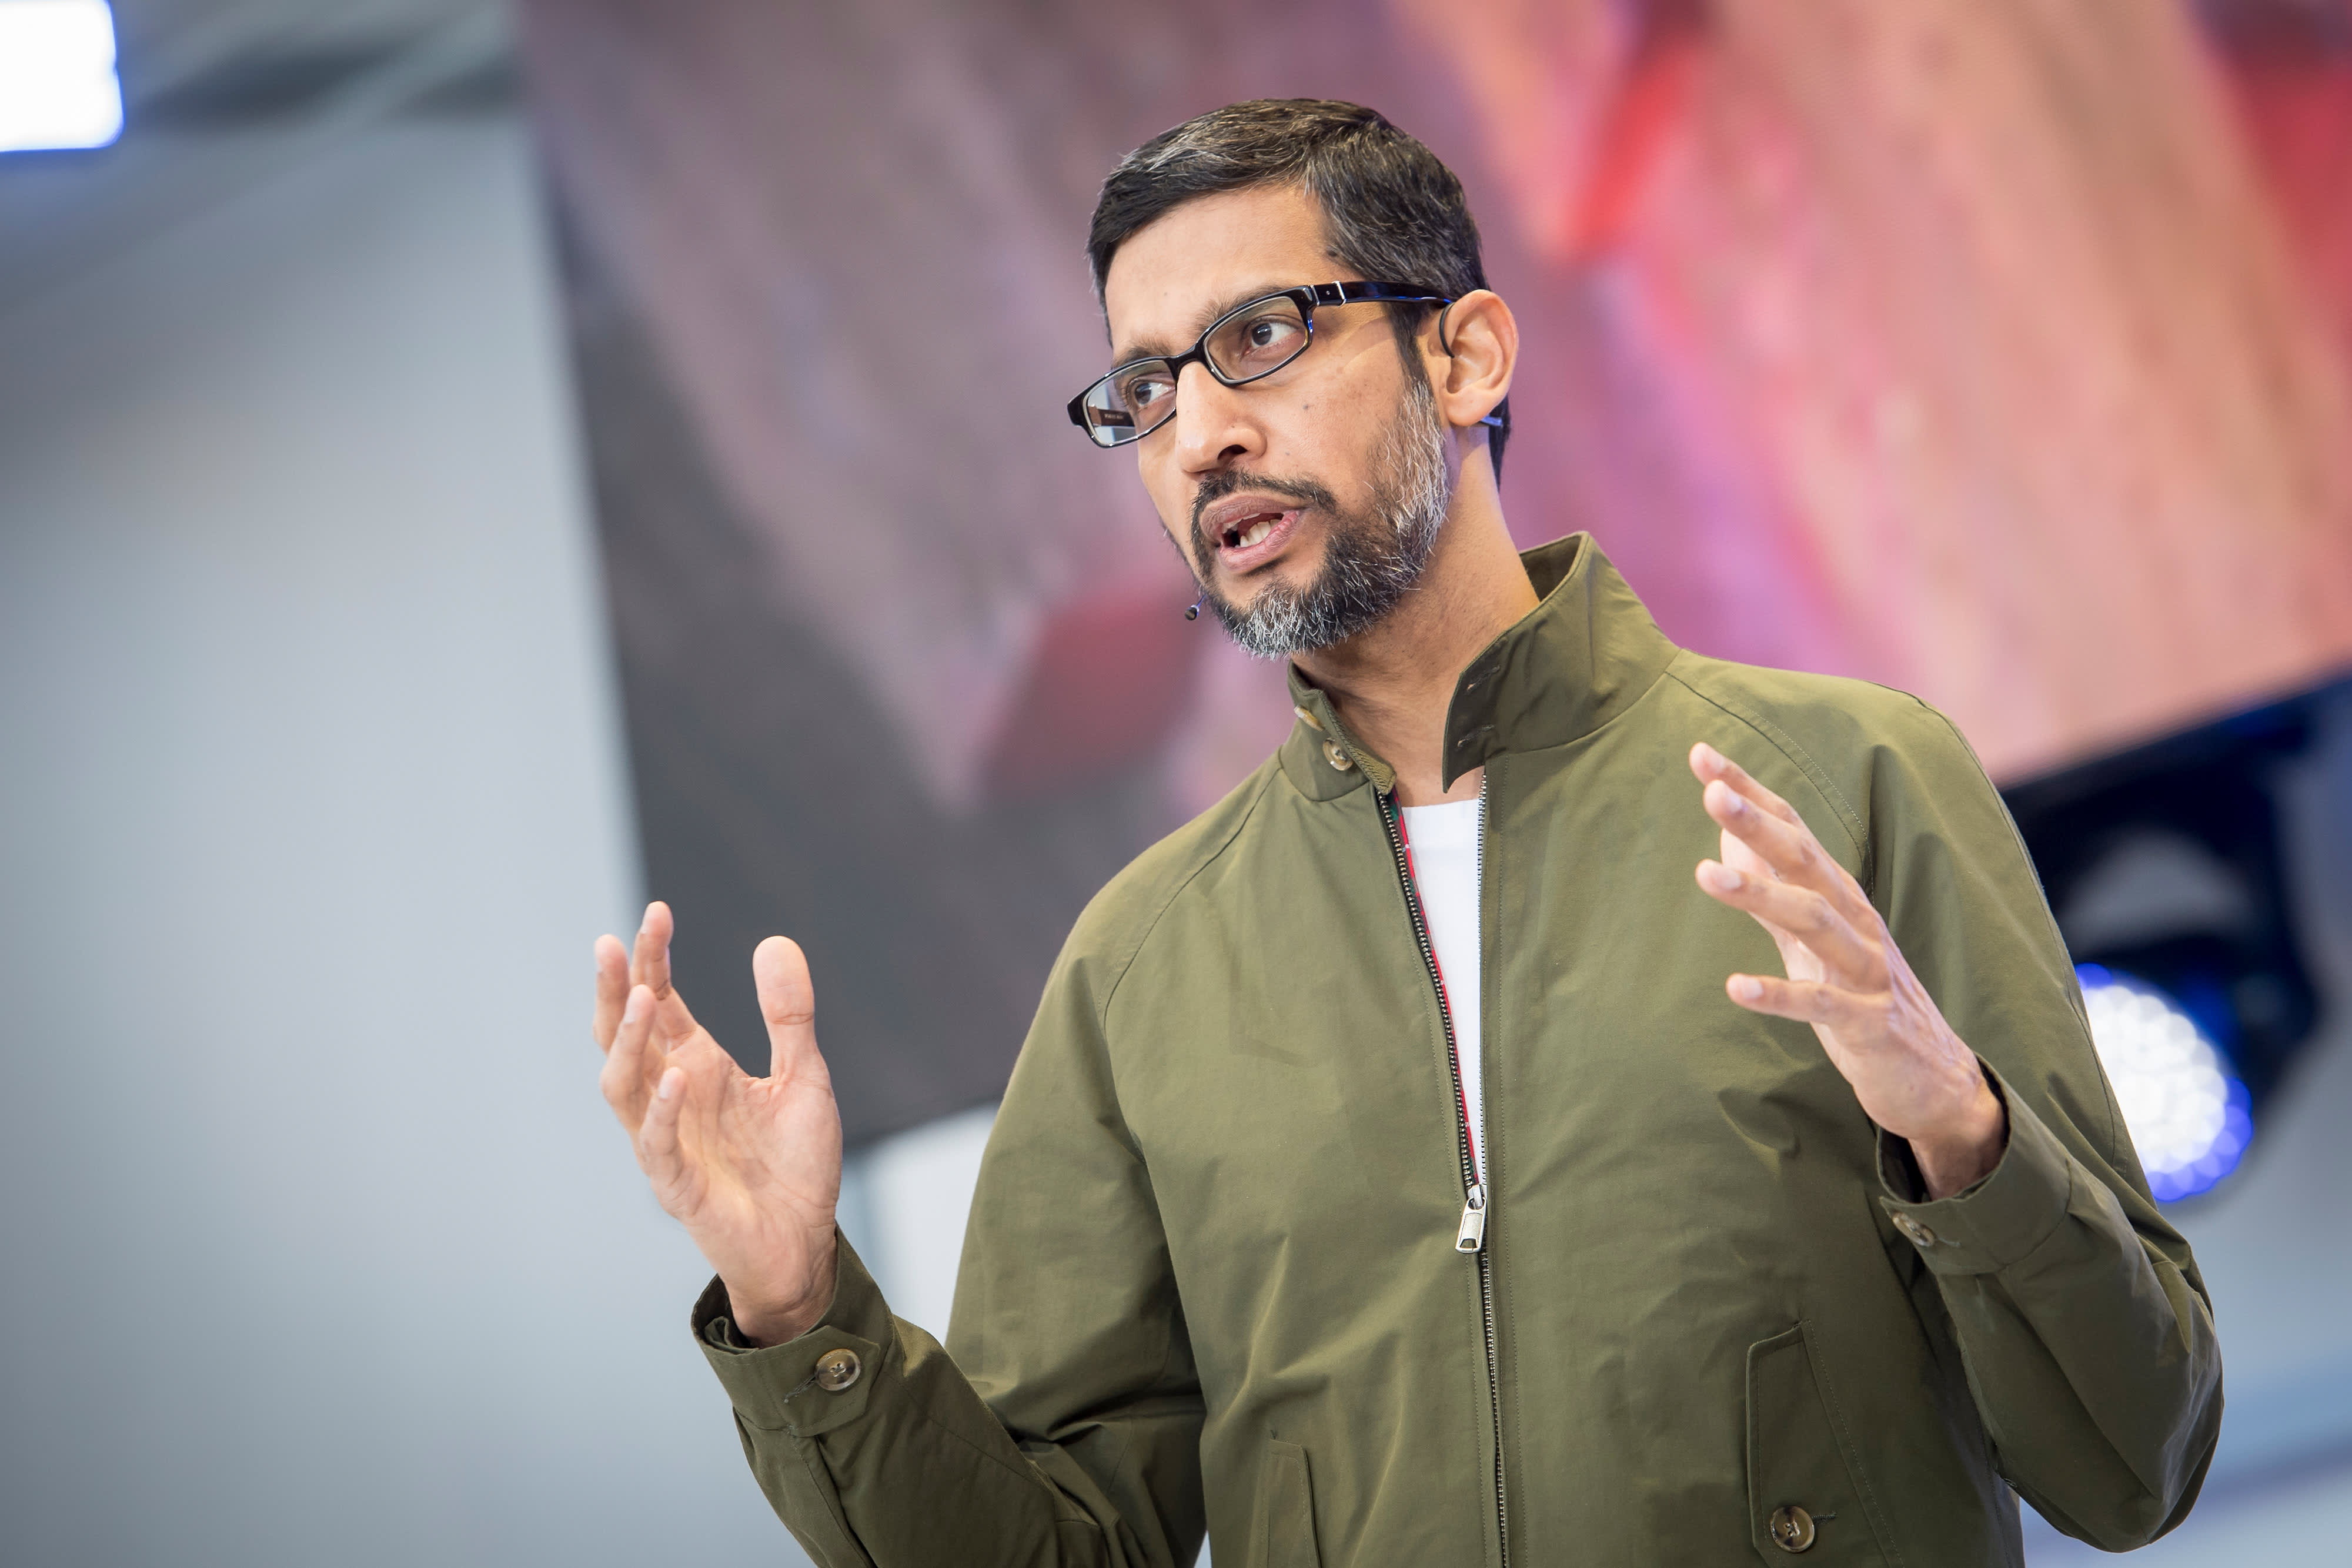 Vedenie spoločnosti Google hovorí, že stretnutie Bard AI nie je len na výskum